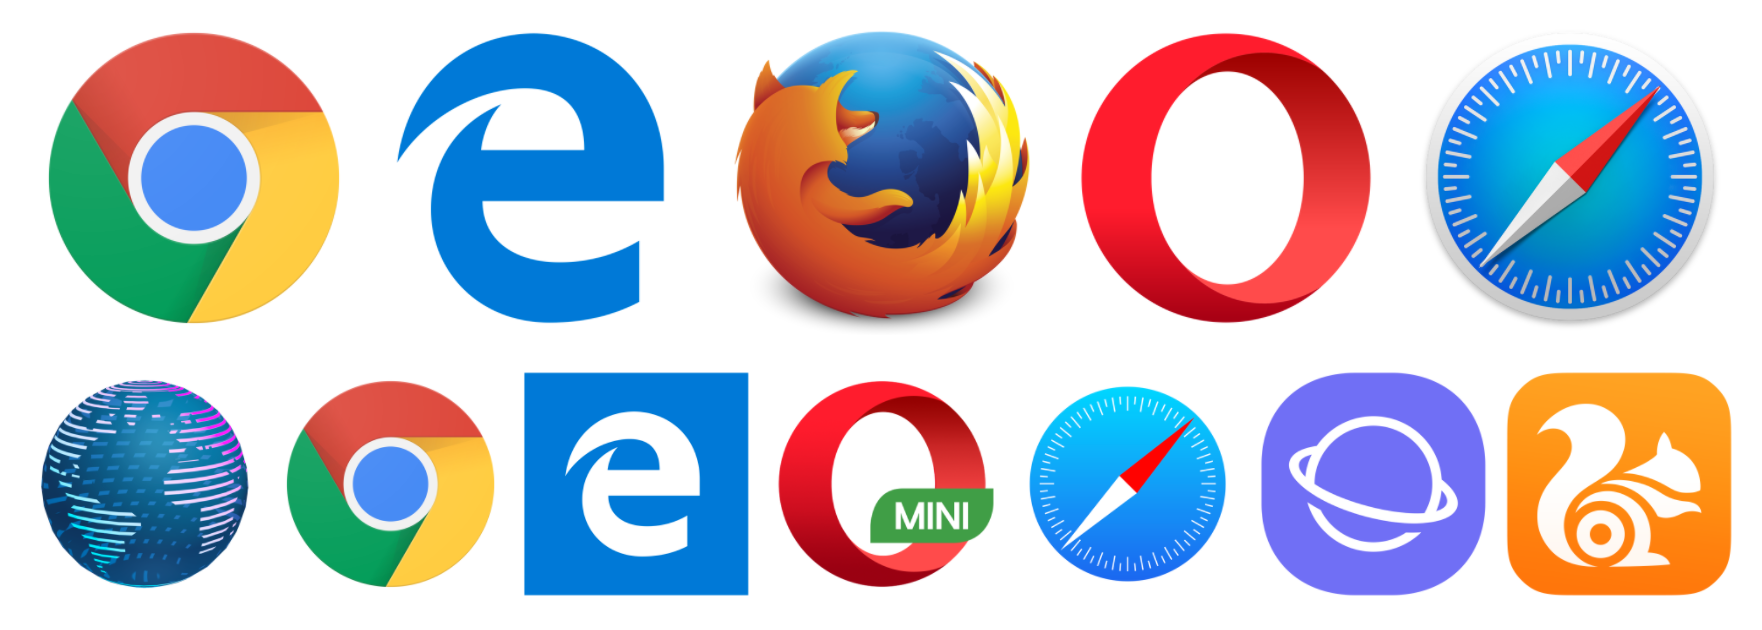 Сайт для скачивания браузеров. Браузер картинки. Разные браузеры. Логотипы браузеров. Иконки популярных браузеров.